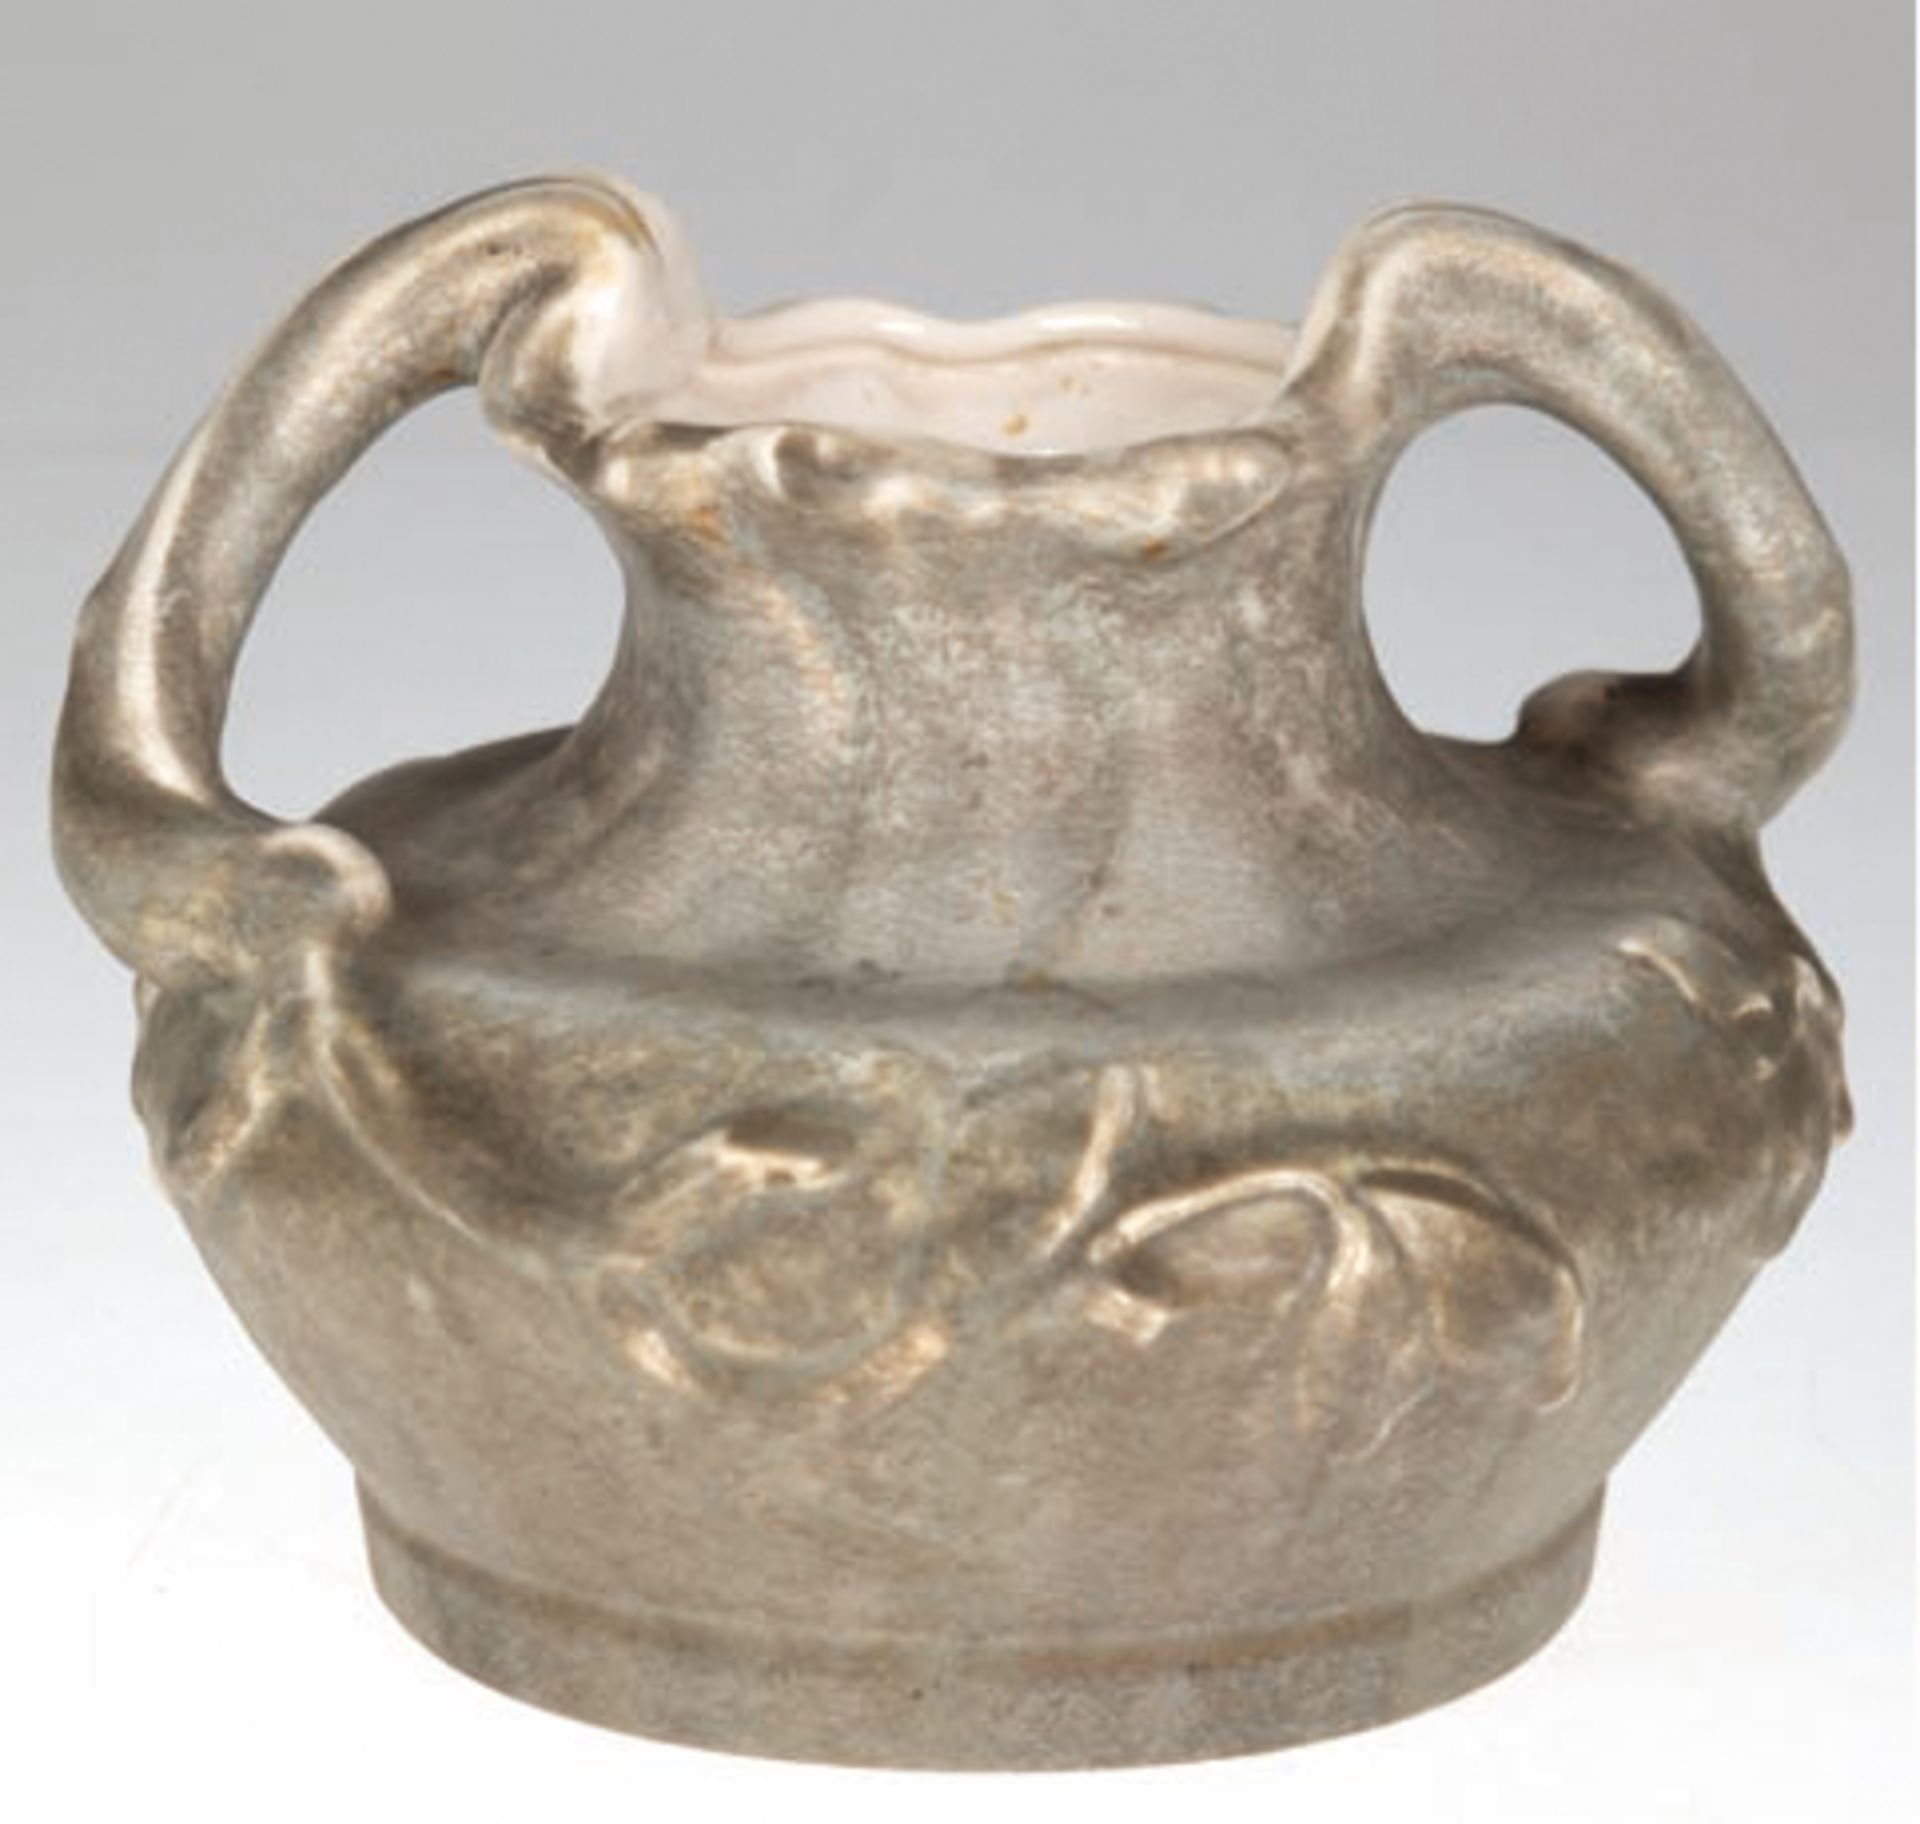 Vase, Keramik, Teichert Meissen, unterseitig Manufakturmarke, flacher bauchiger Korpus mit taillier